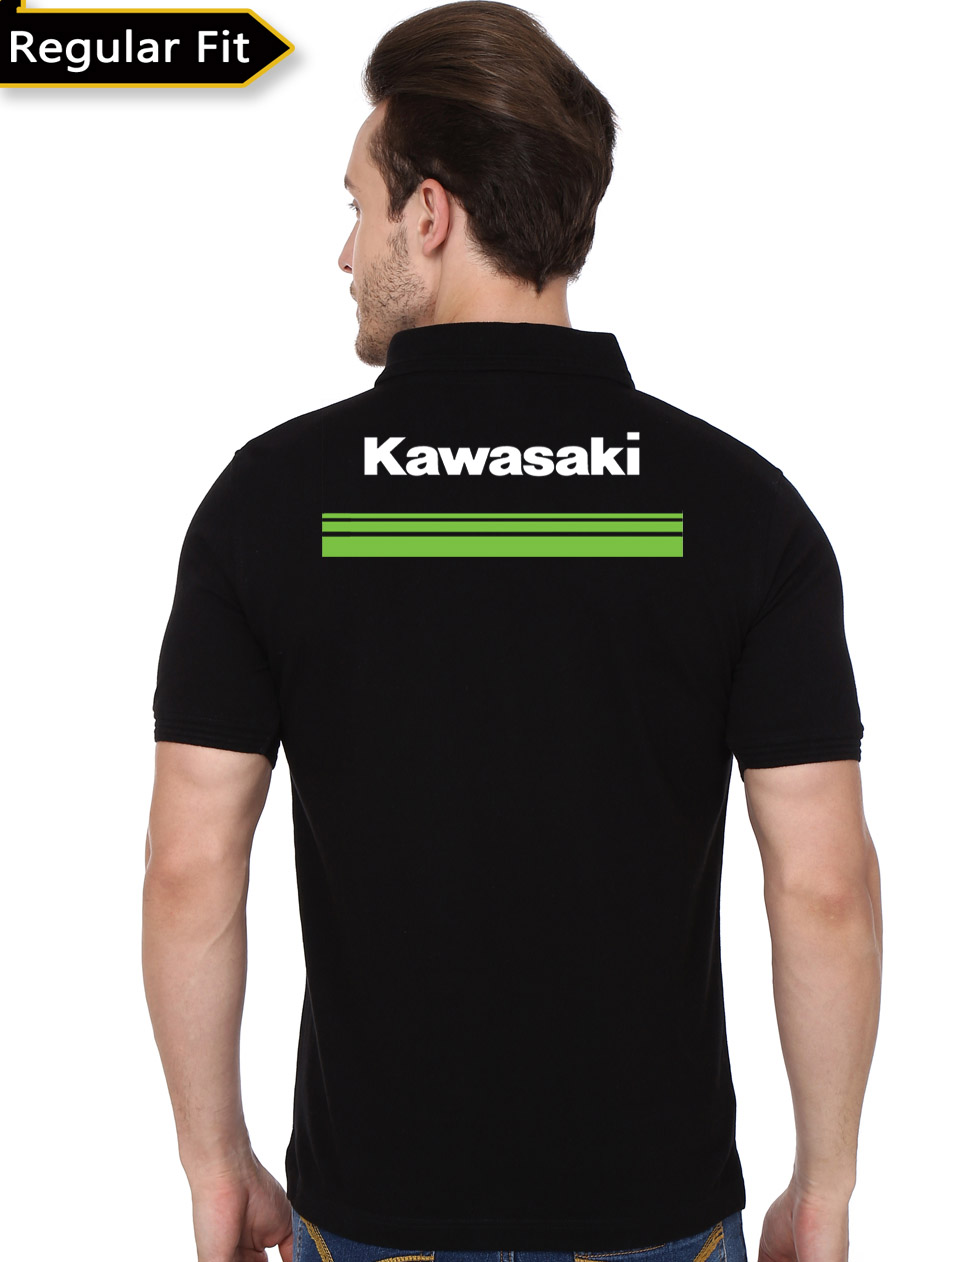 kawasaki t shirts online india